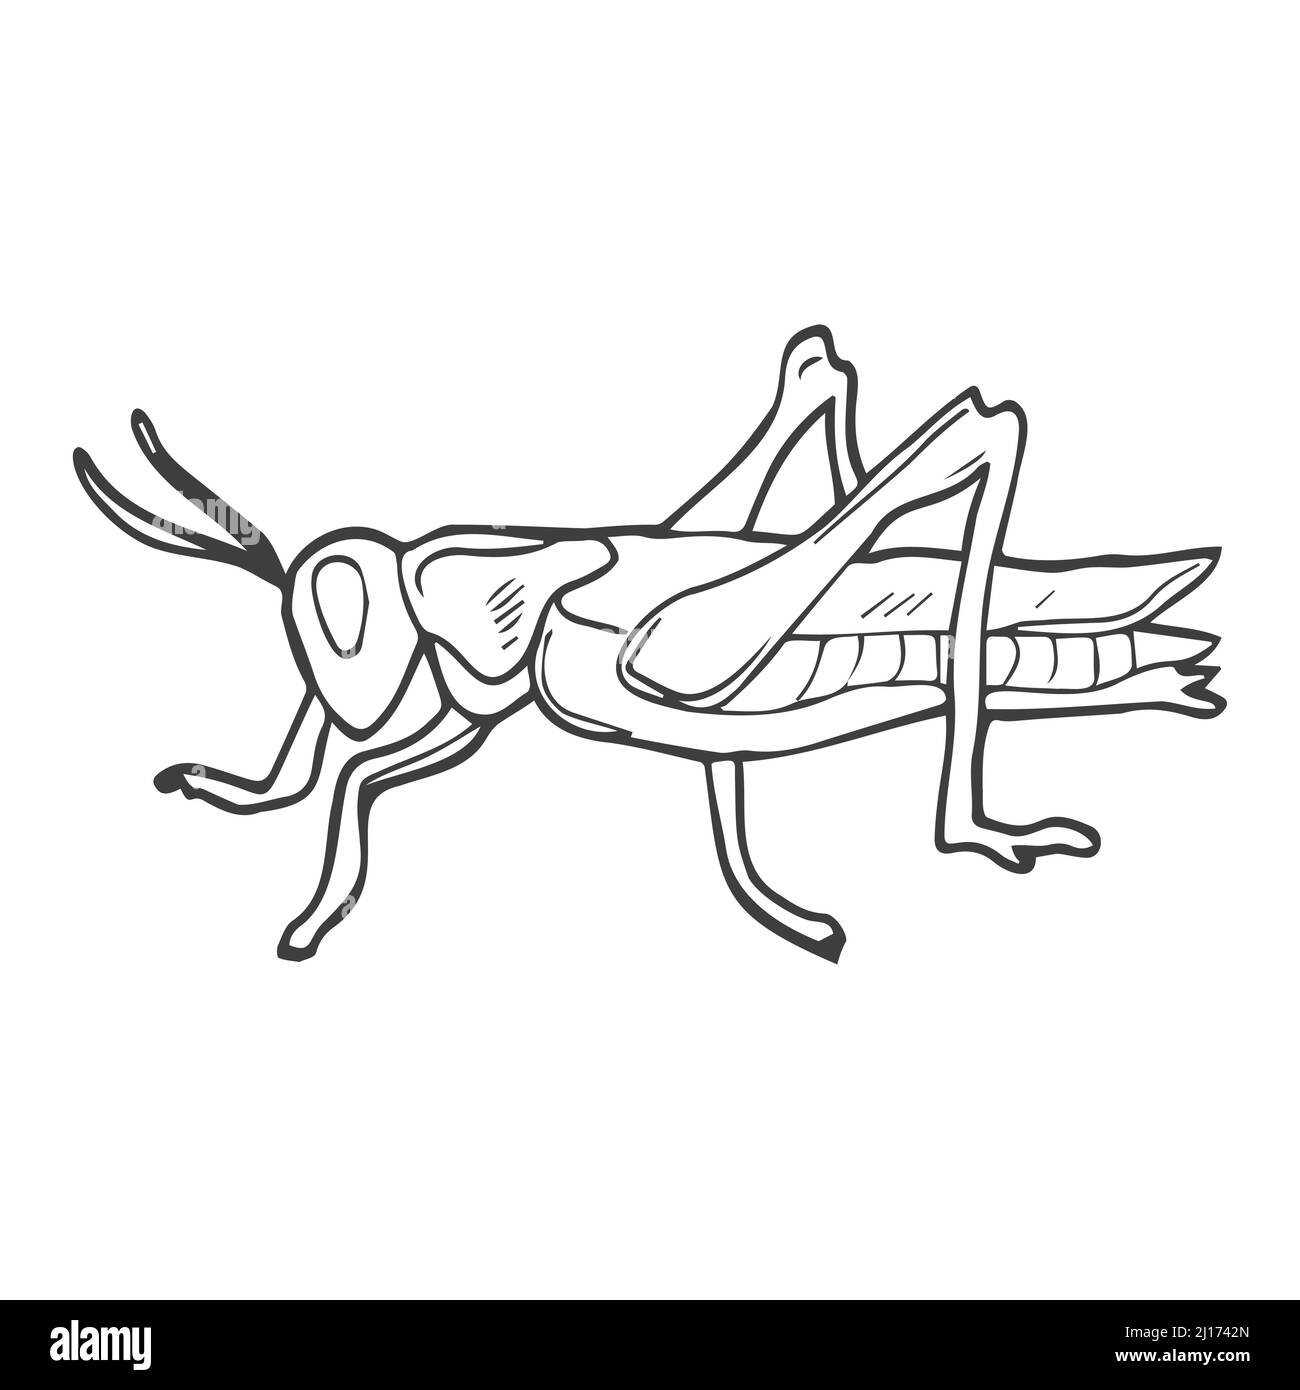 Grasshopper-Doodle im Vektor. Linienzeichnung des Insekts. Isoliert Stock Vektor